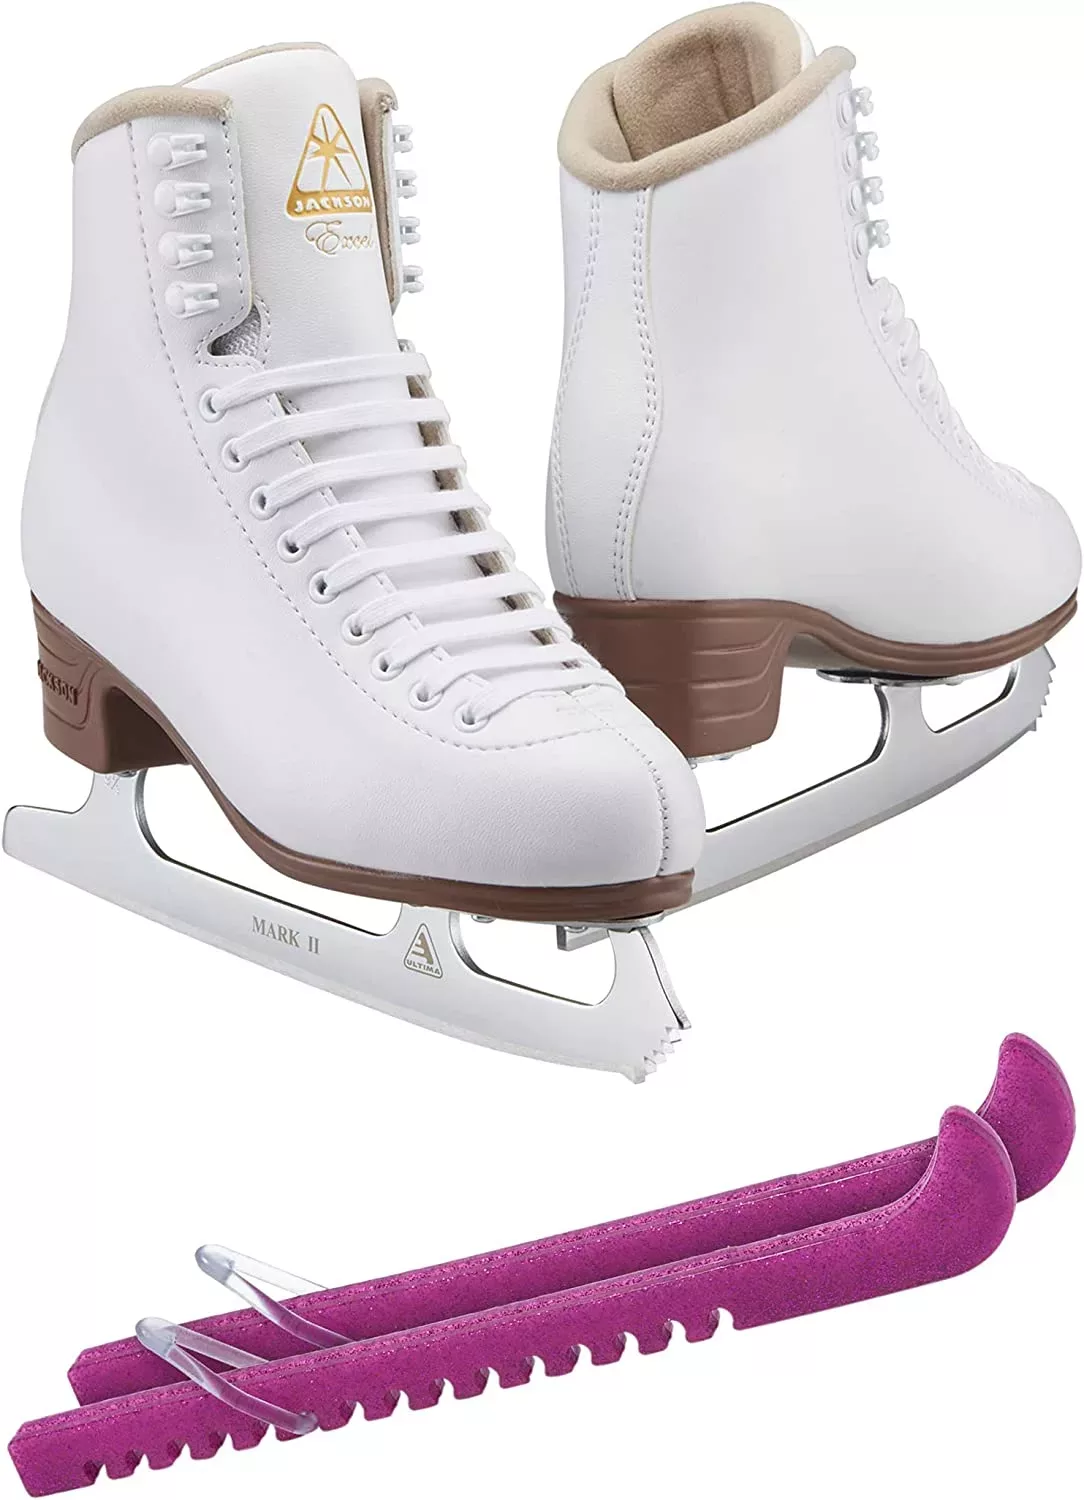 SKATE GURU Jackson Ultima Patins à glace Excel JS1290 Bundle avec protections de patins Guardog Liasses